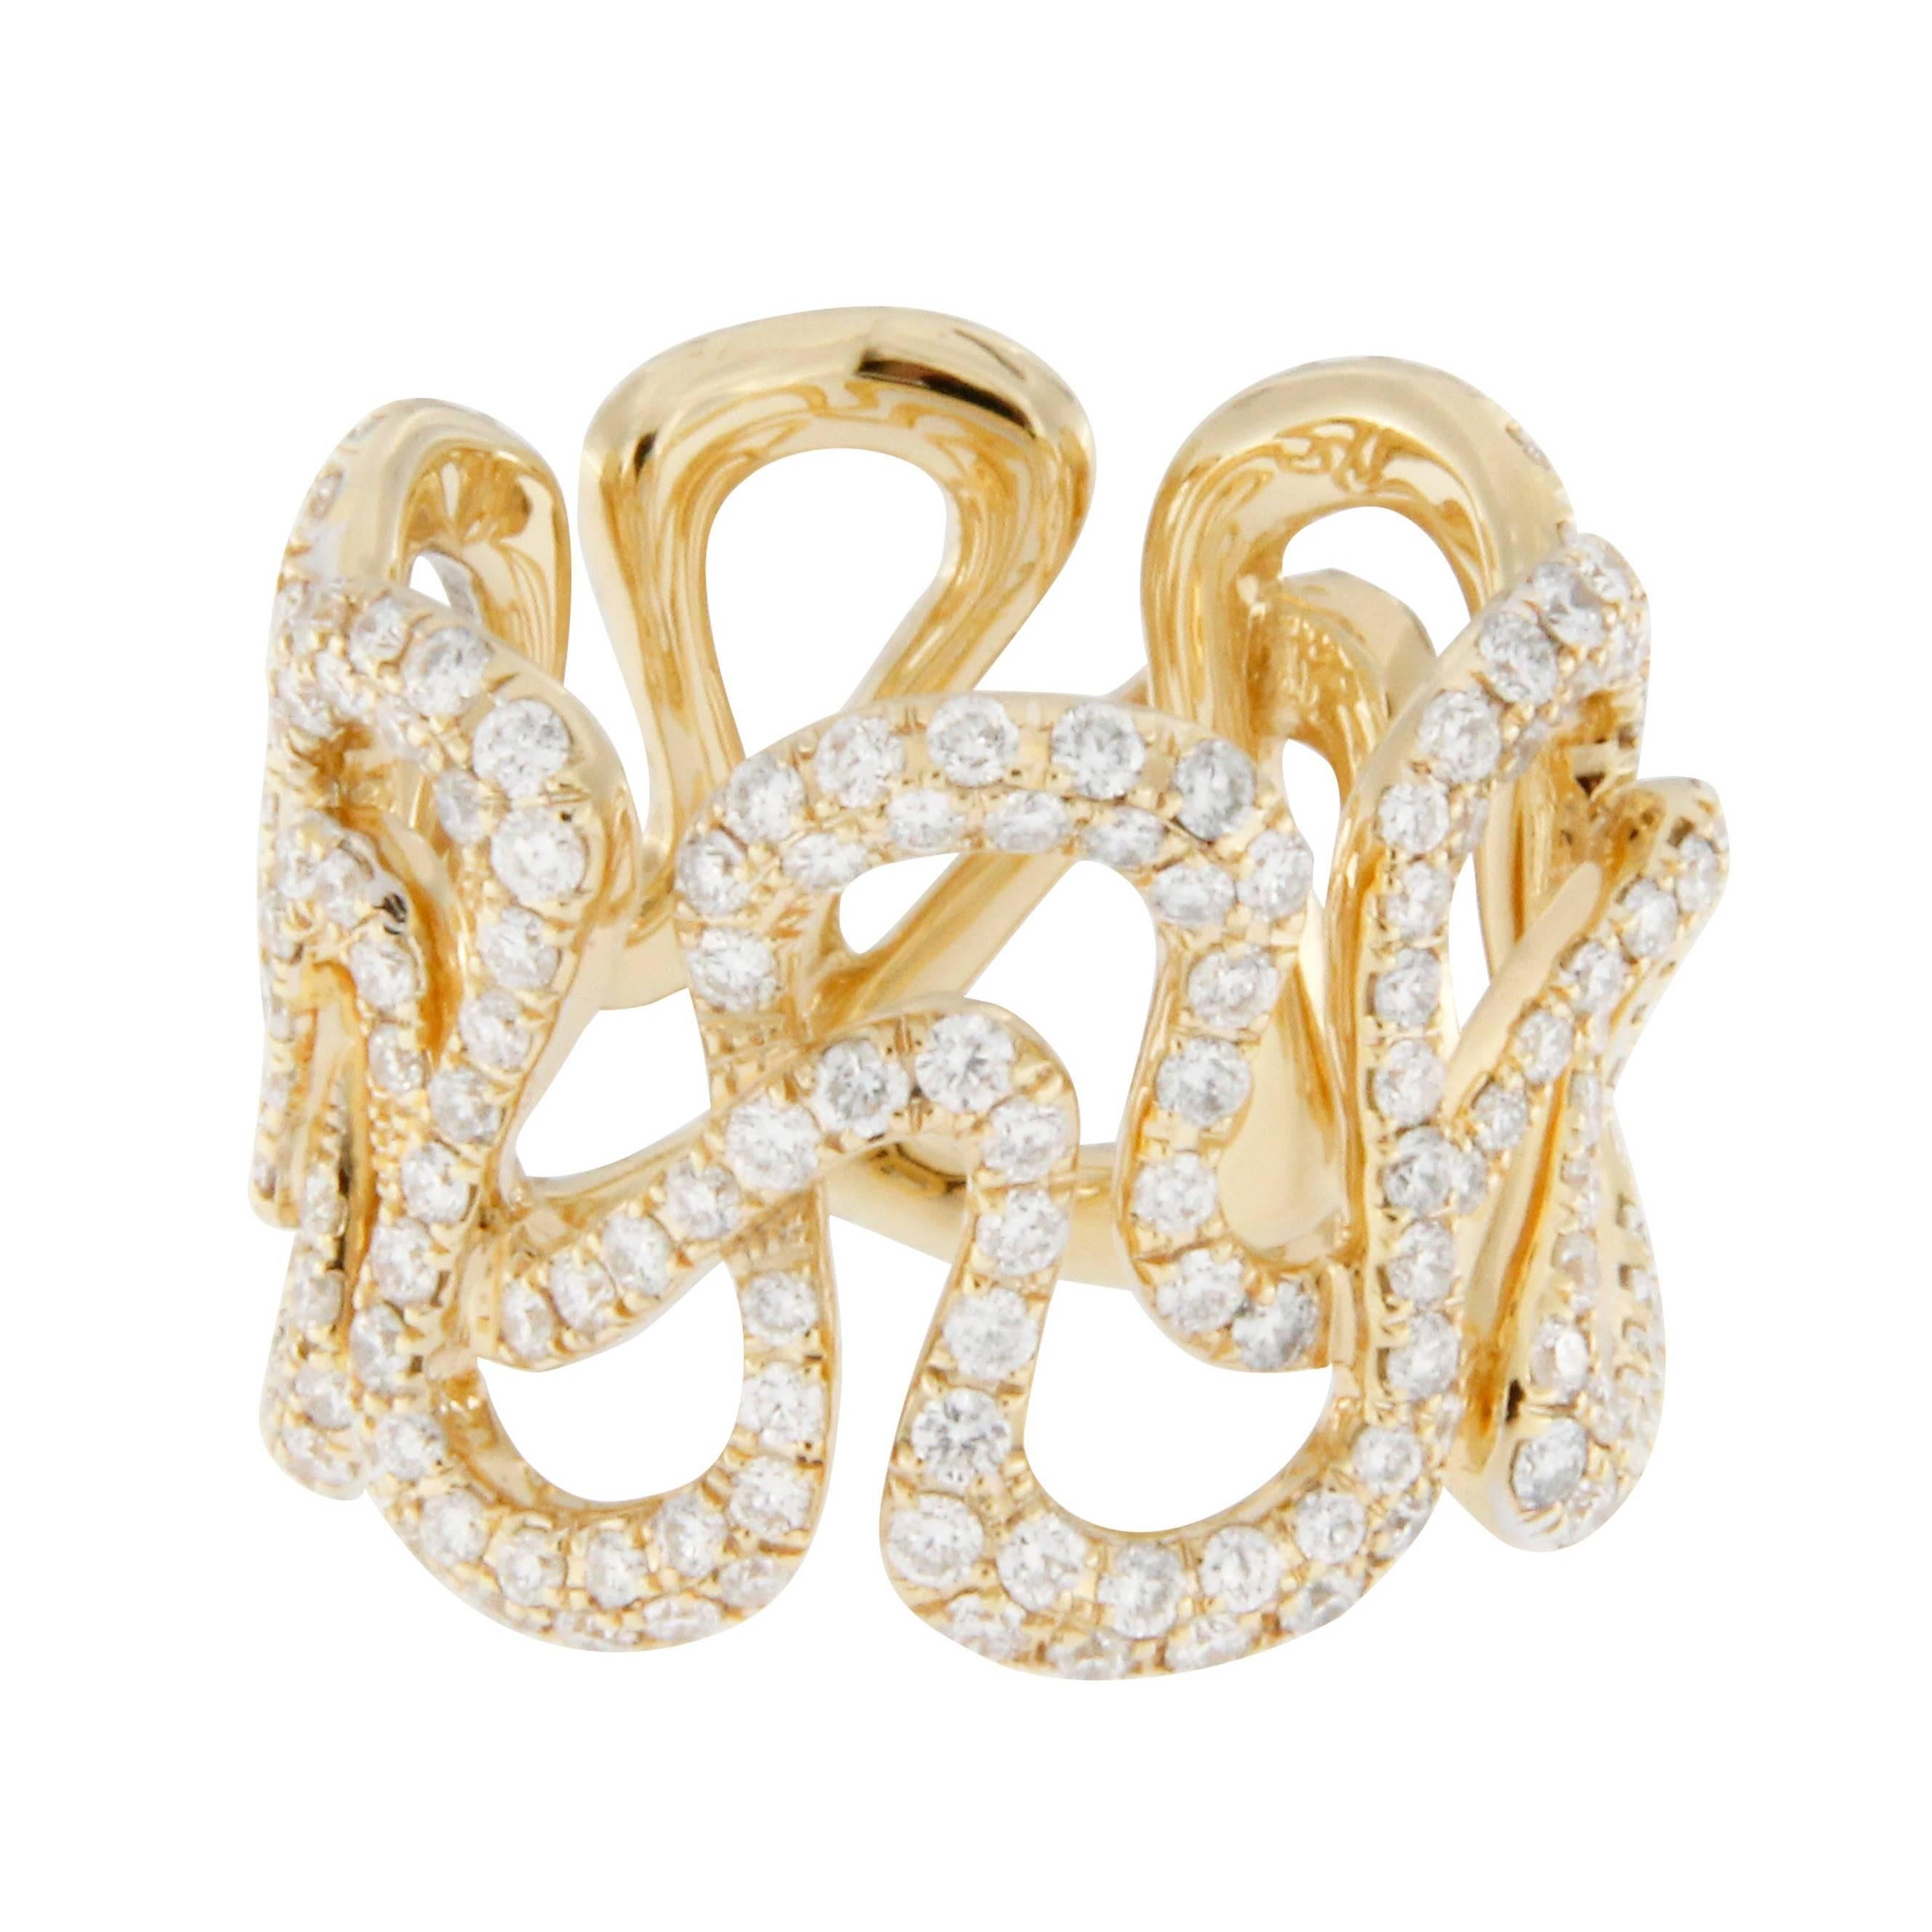 Jona White Diamond 18 karat Yellow Gold Swirl Band Ring